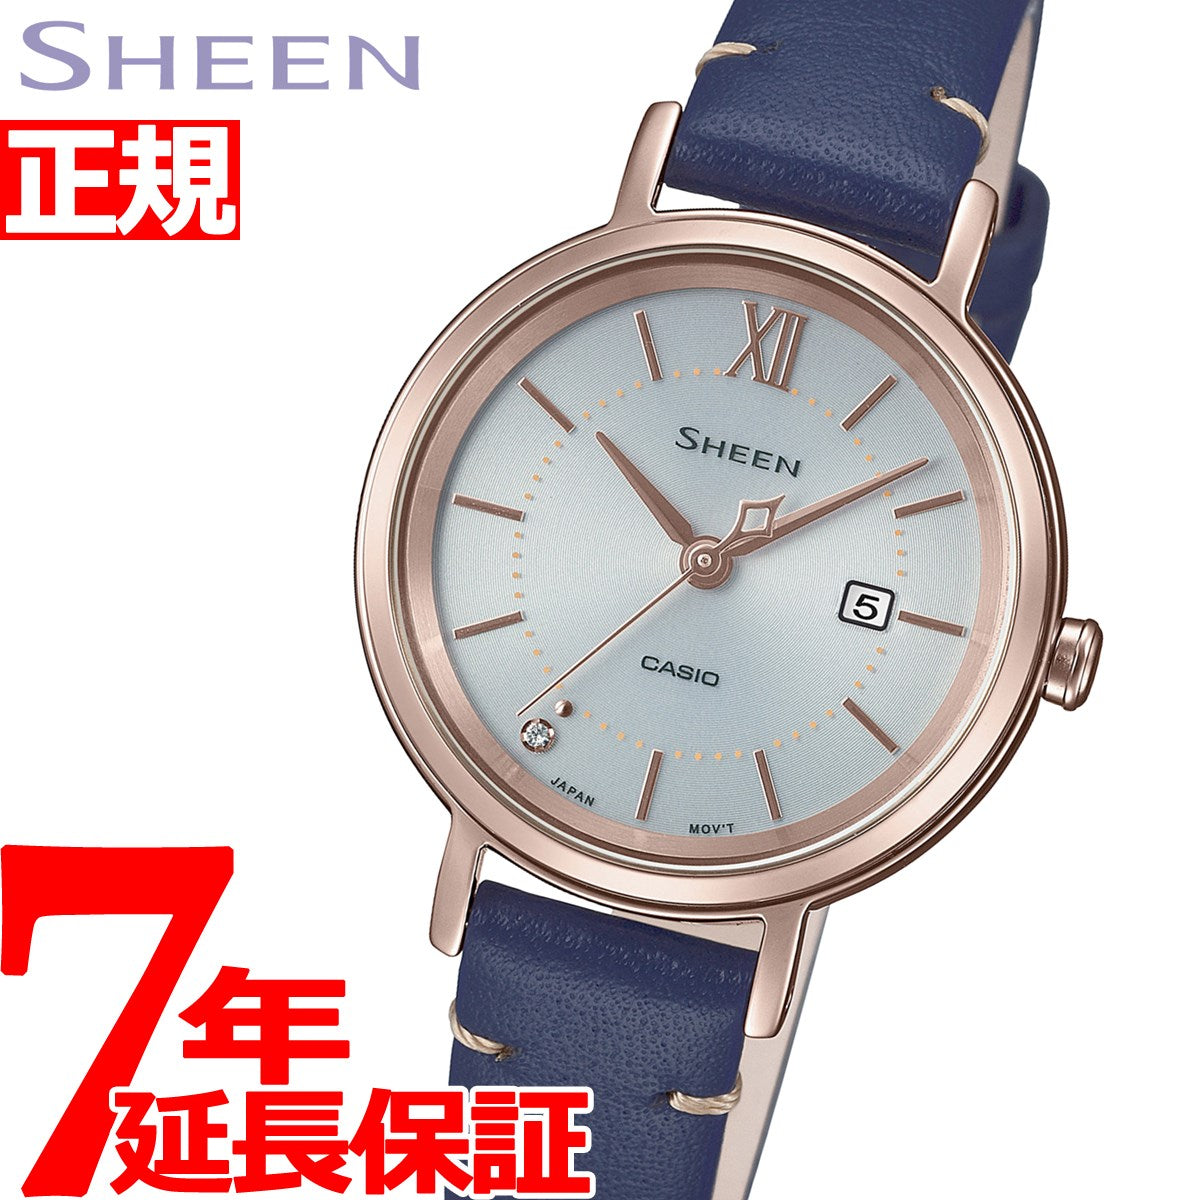 カシオ・SHEEN ソーラー腕時計【ピンクゴールド】レディース - 腕時計 